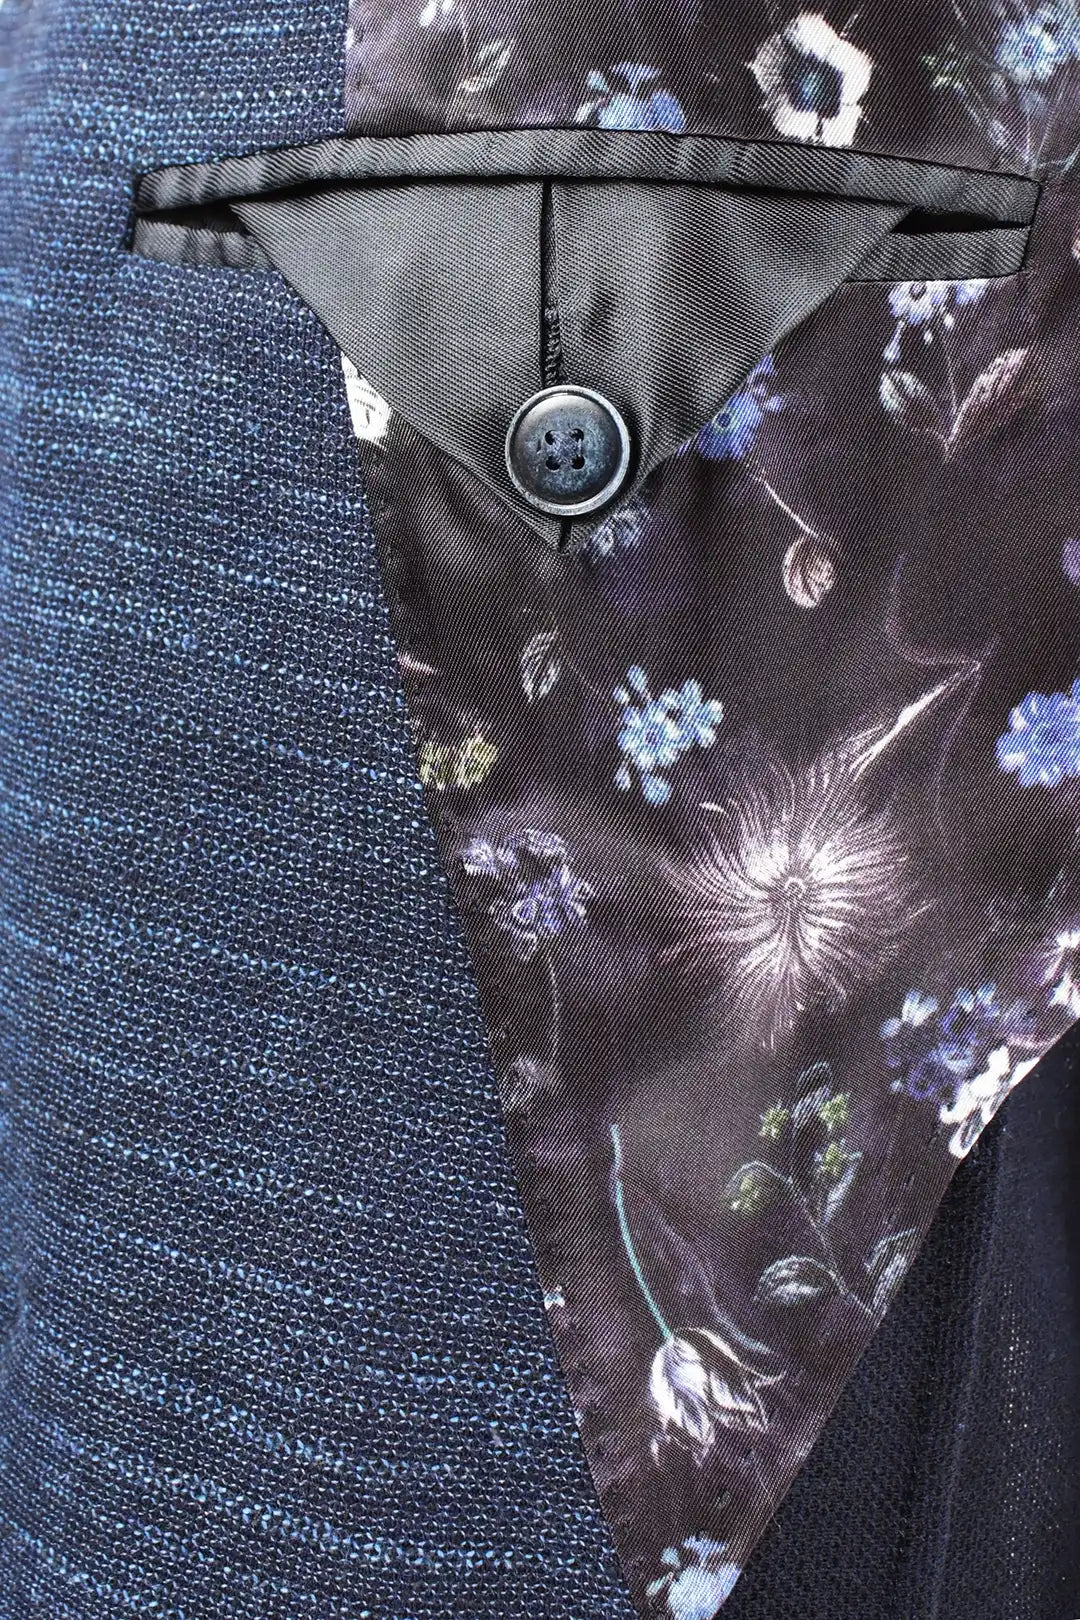 Giacca doppiopetto in fresco lana blu tasca interna